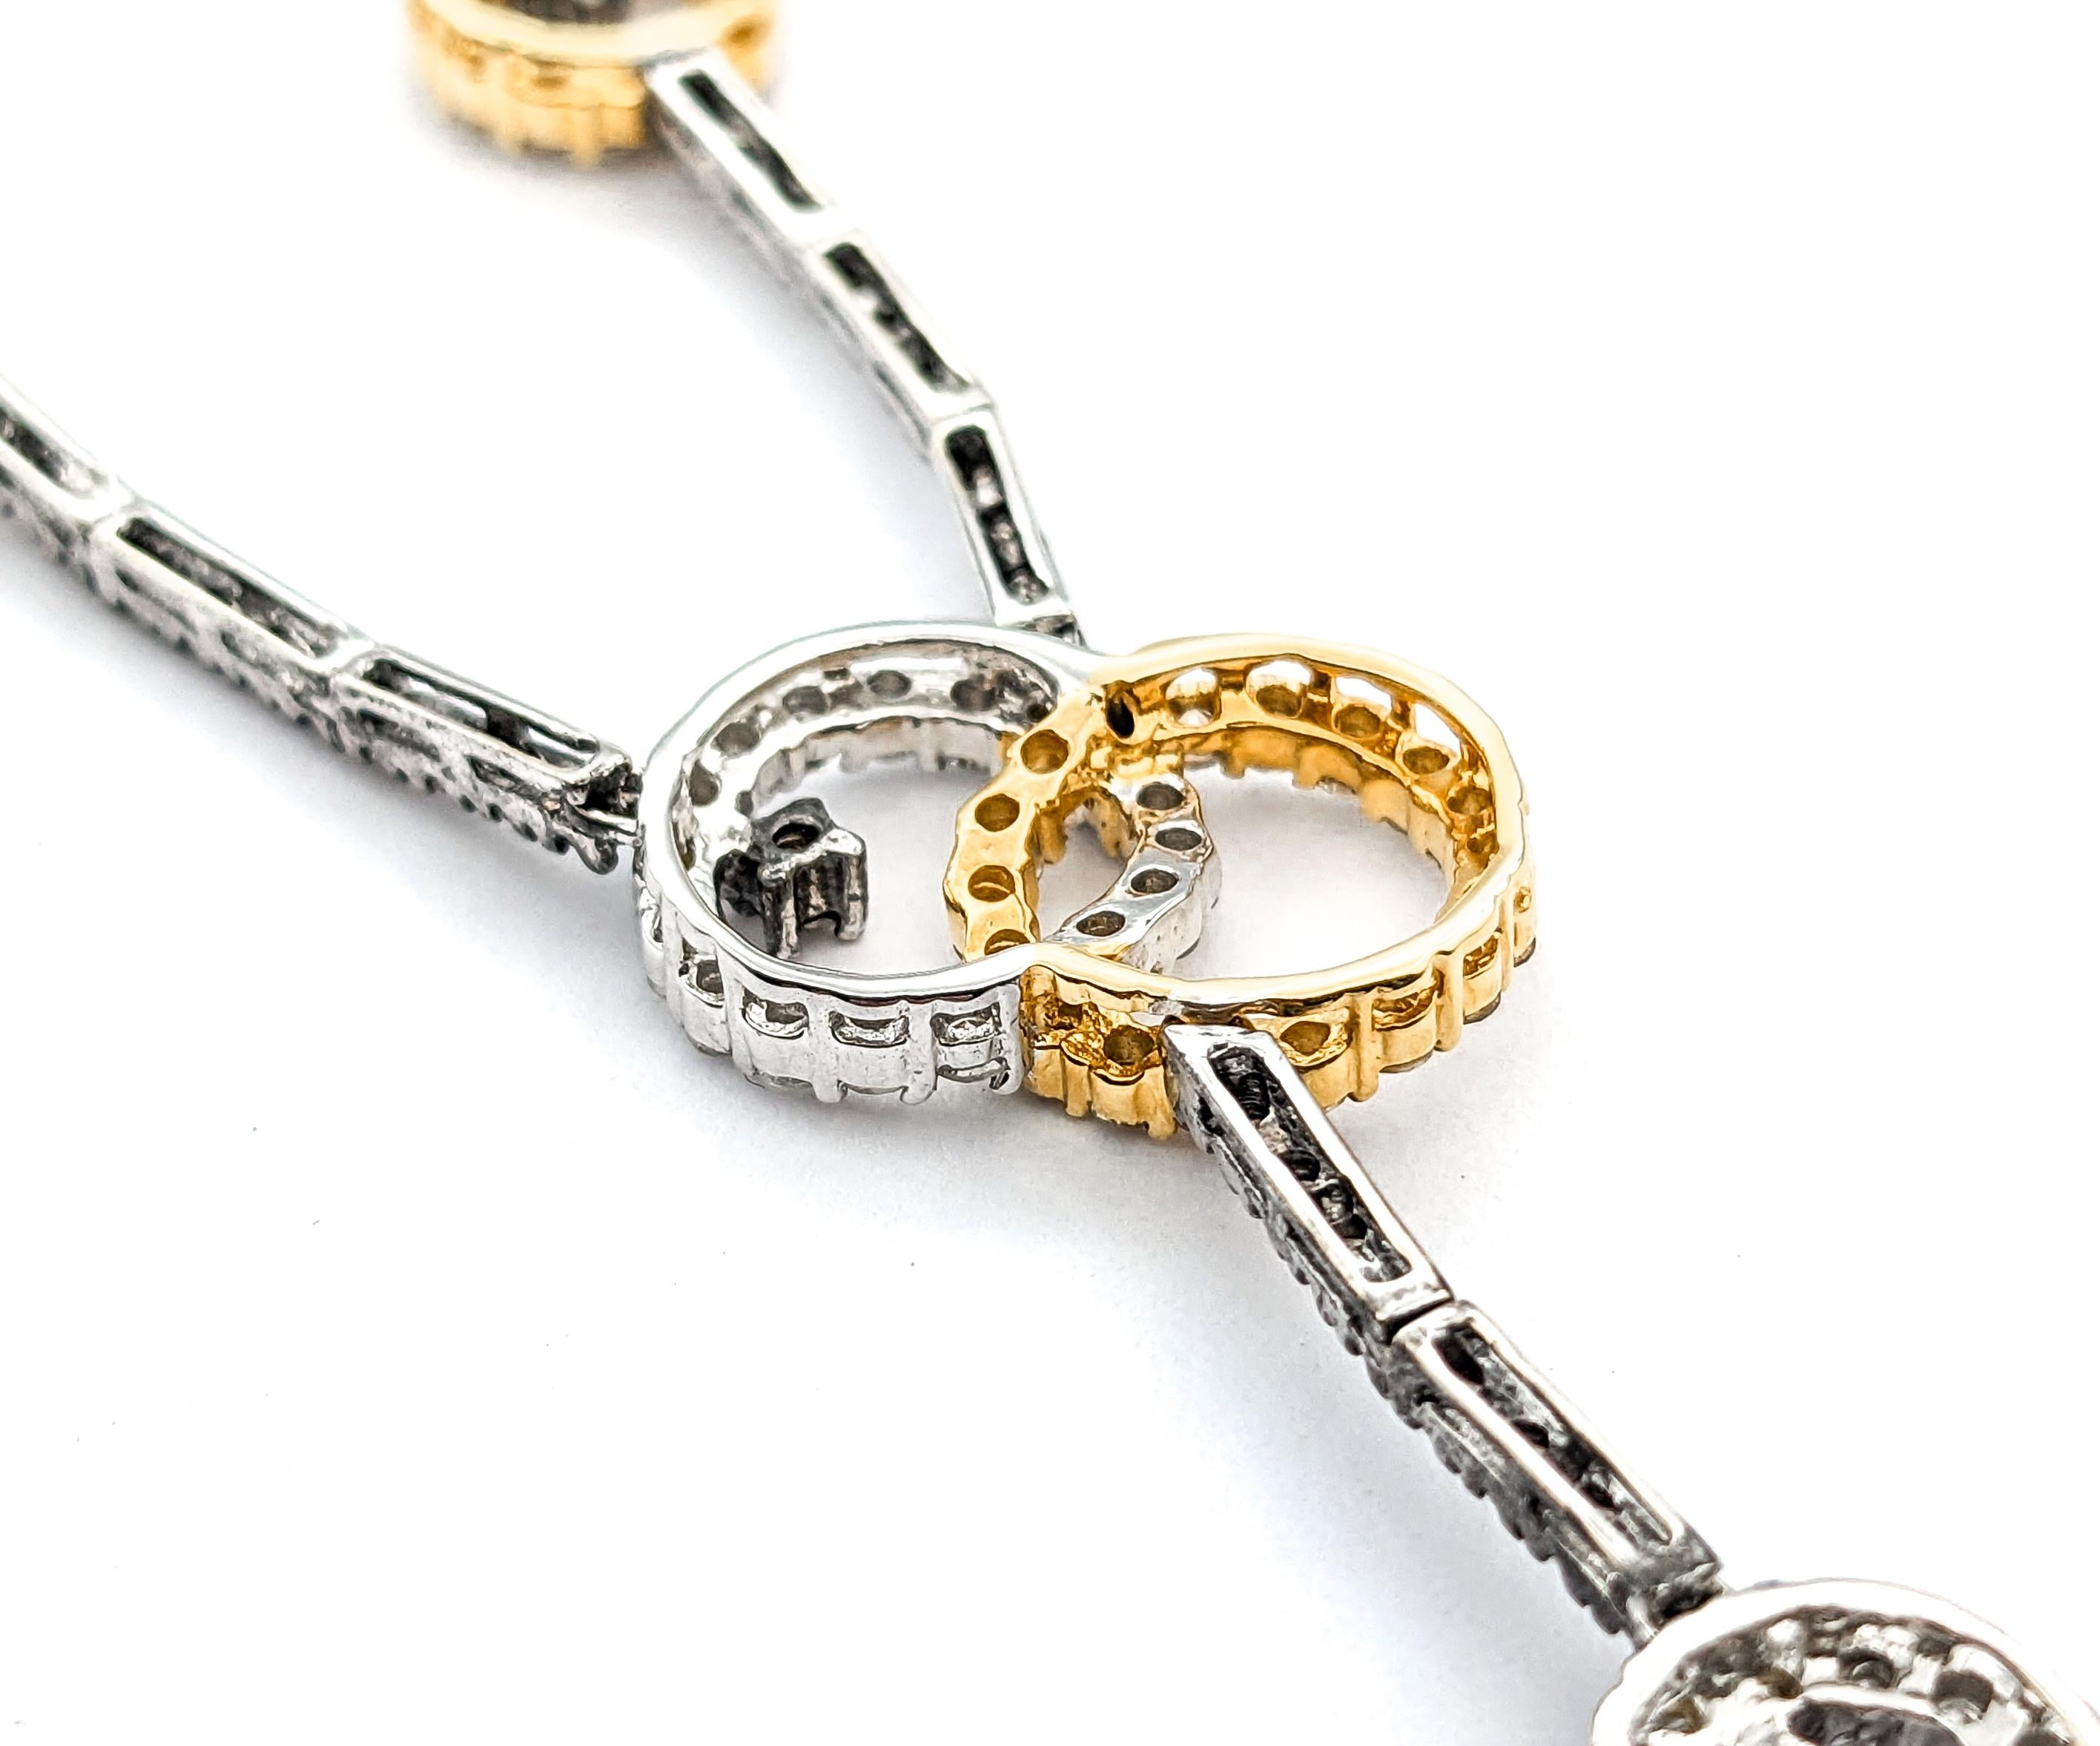 Sonia B. 2,75ctw Diamant-Halskette in 18kt Tow-Tone Gold

Diese exquisite Diamant-Halskette Sonia B ist aus 18-karätigem Gold gefertigt. Diese Halskette ist mit beeindruckenden 2,75 ct Diamanten besetzt, die von einem atemberaubenden 2,5-Zoll-Fall